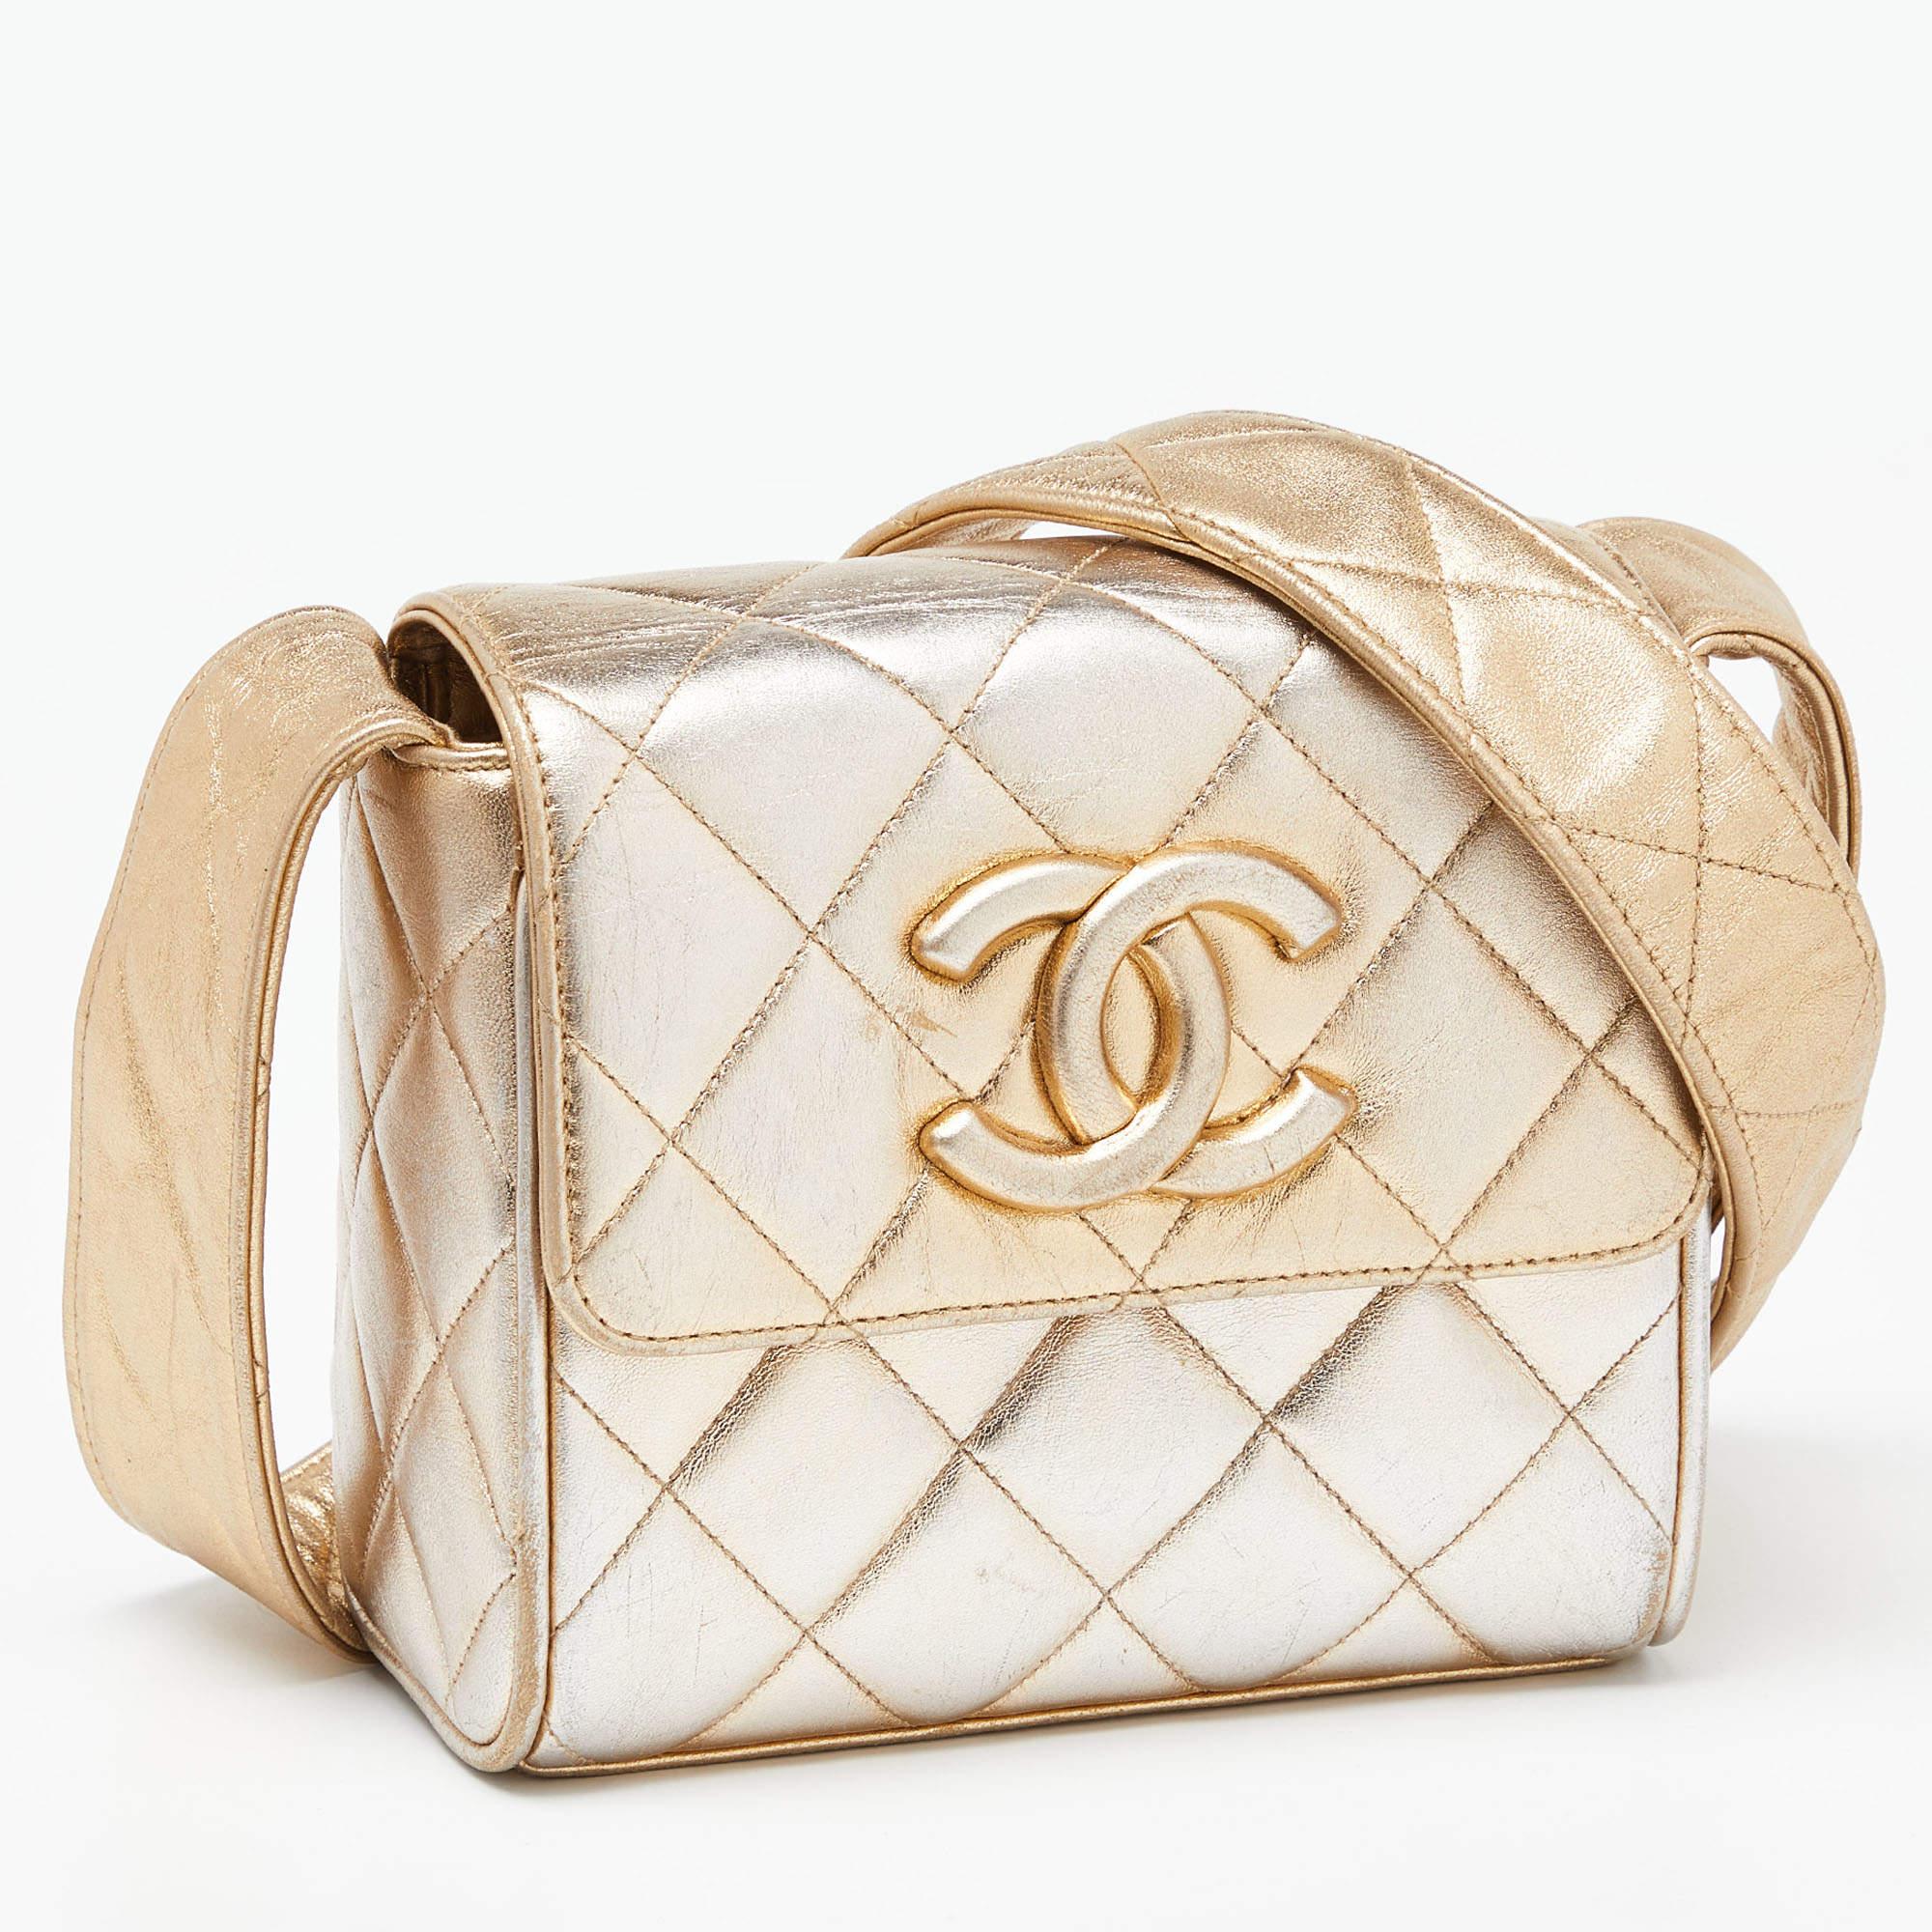 Diese goldene CC-Tasche mit Überschlag von Chanel ist ein Beispiel für die feinen Designs der Marke, die durch ihre geschickte Verarbeitung einen klassischen Charme versprühen. Es handelt sich um eine funktionelle Kreation mit einer gehobenen